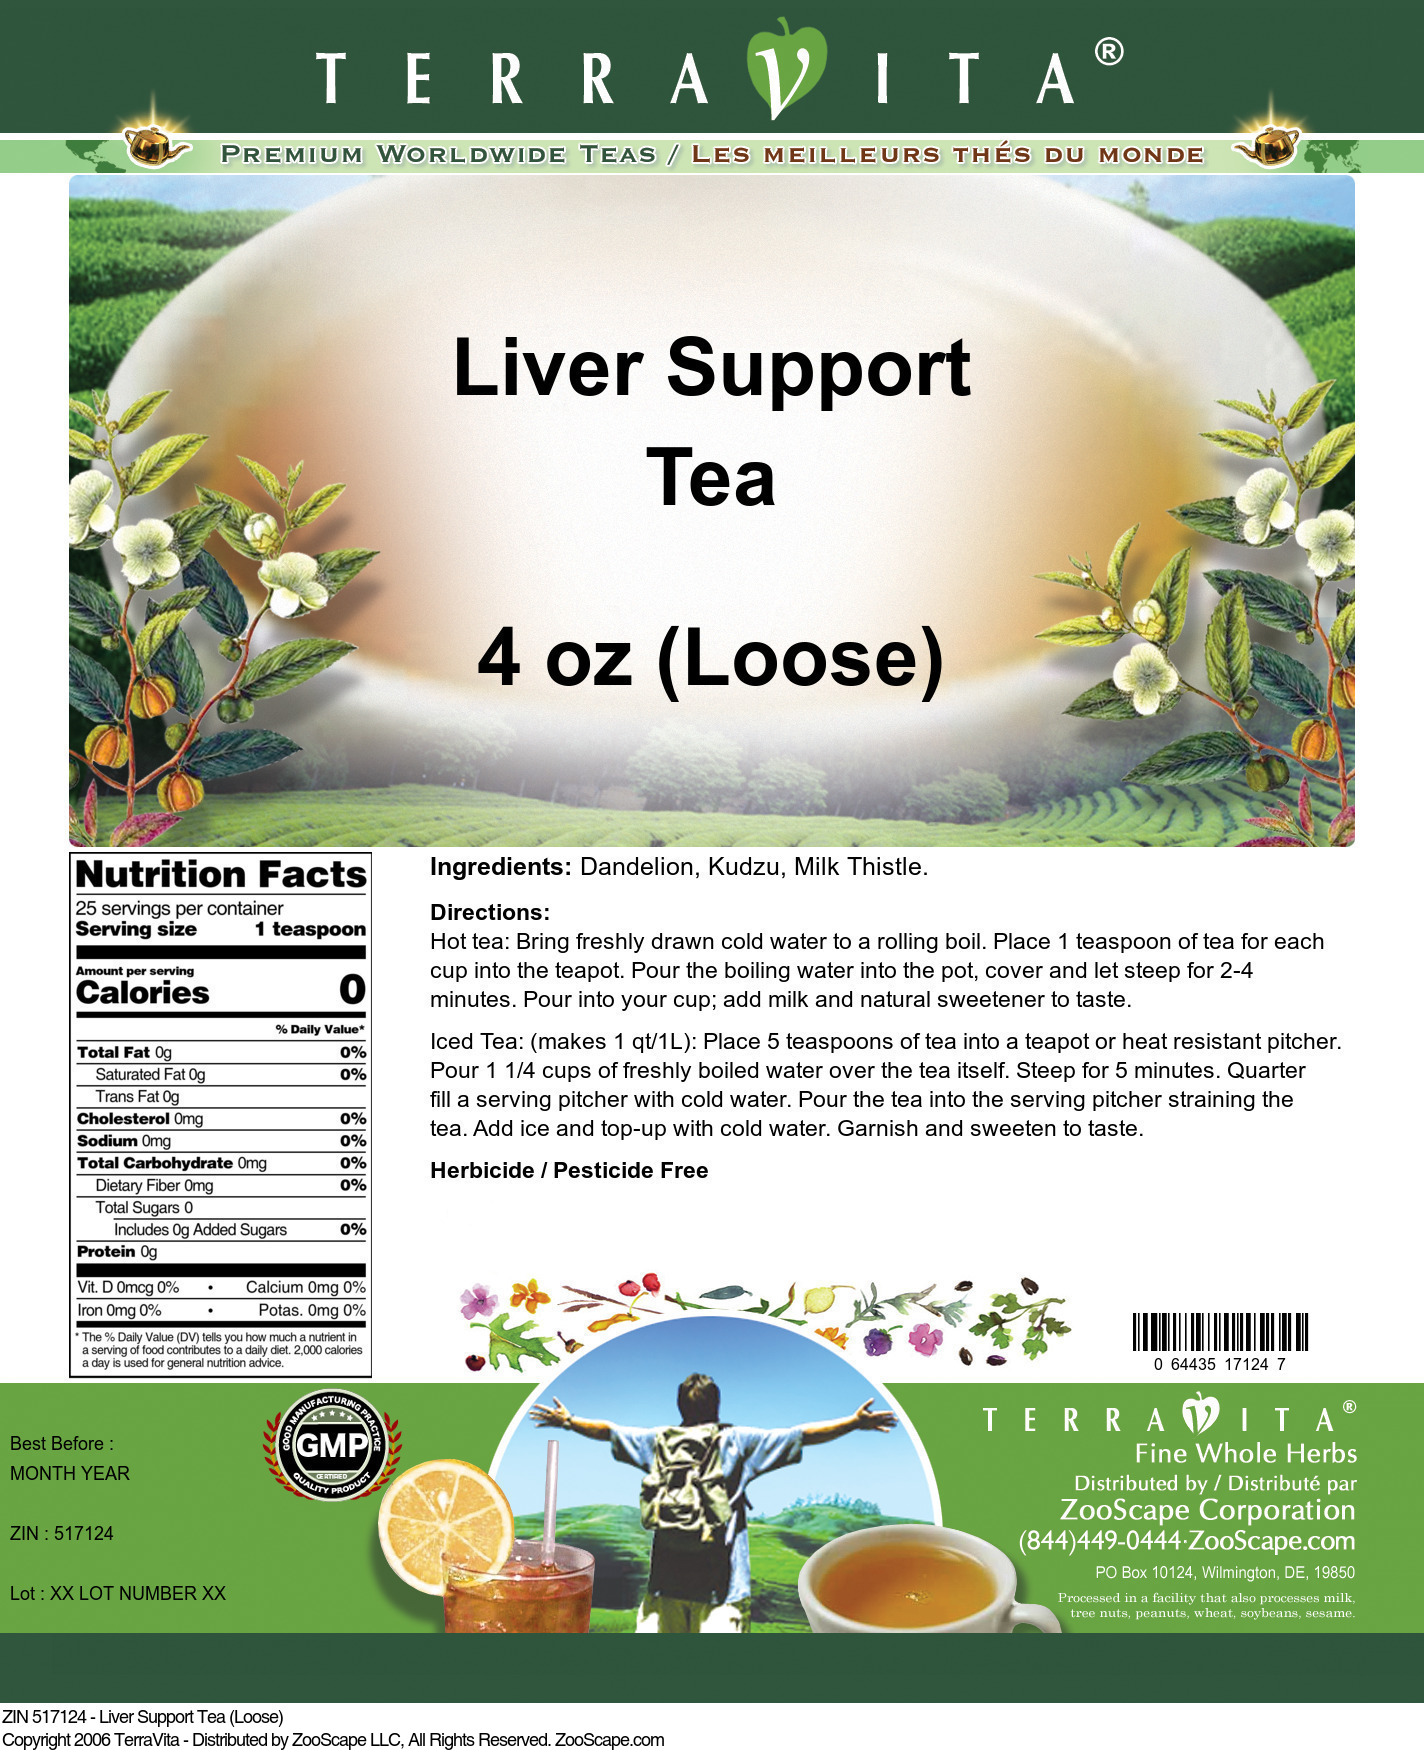 Liver Support Tea (Loose) - Label